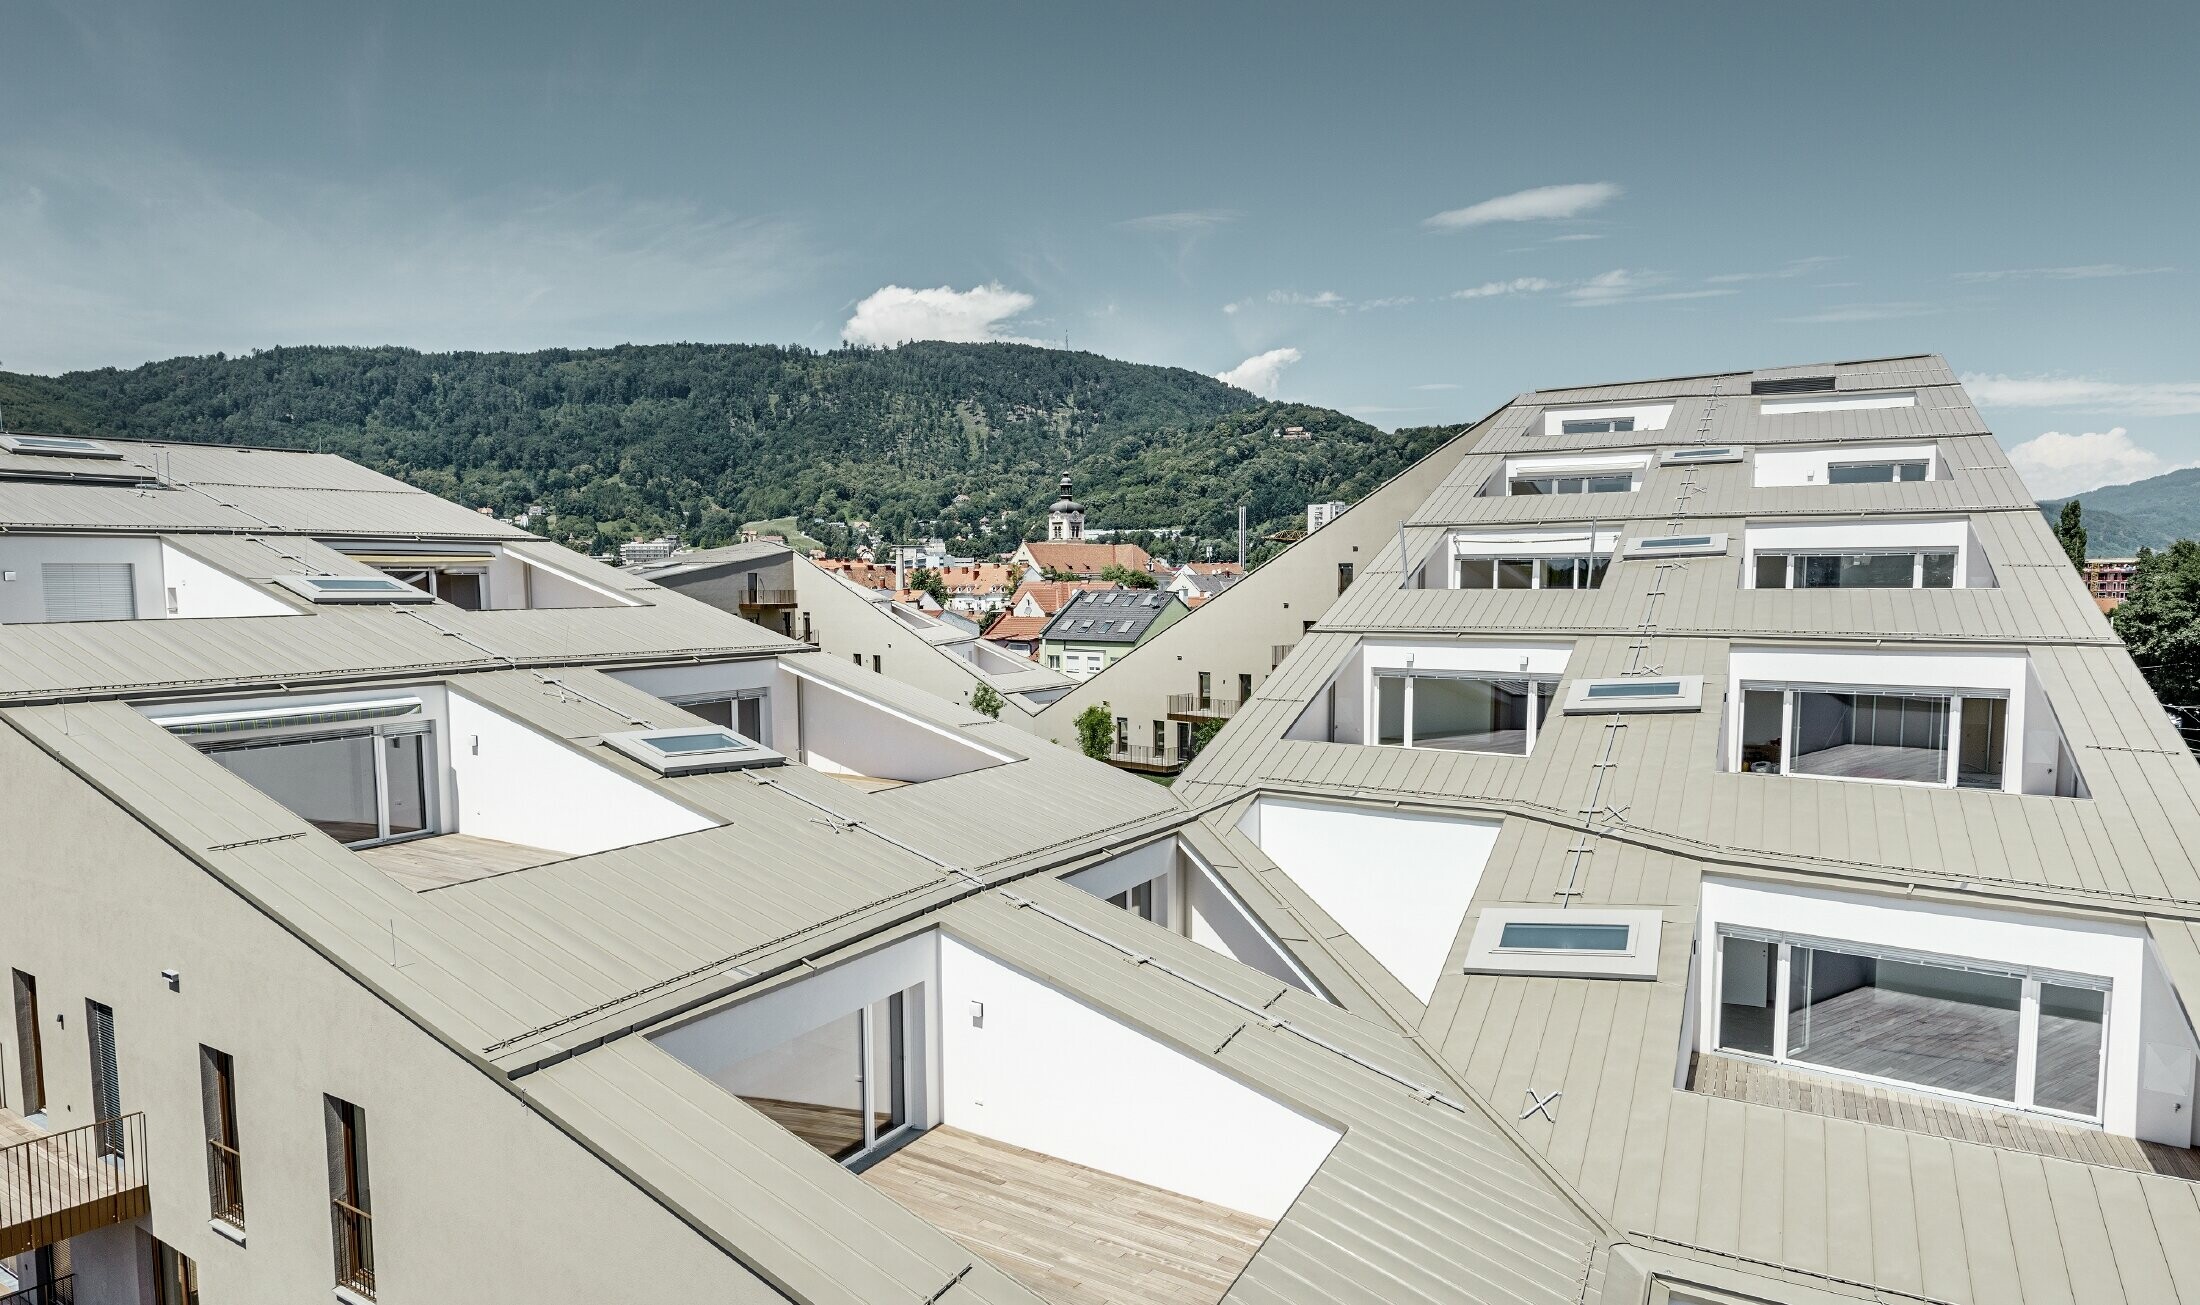 Osiedle mieszkaniowe w Grazu z płaskimi dachami, zintegrowanymi tarasami i wielkopowierzchniowymi oknami, z dachem Prefalz w kolorze specjalnym broncemetallic